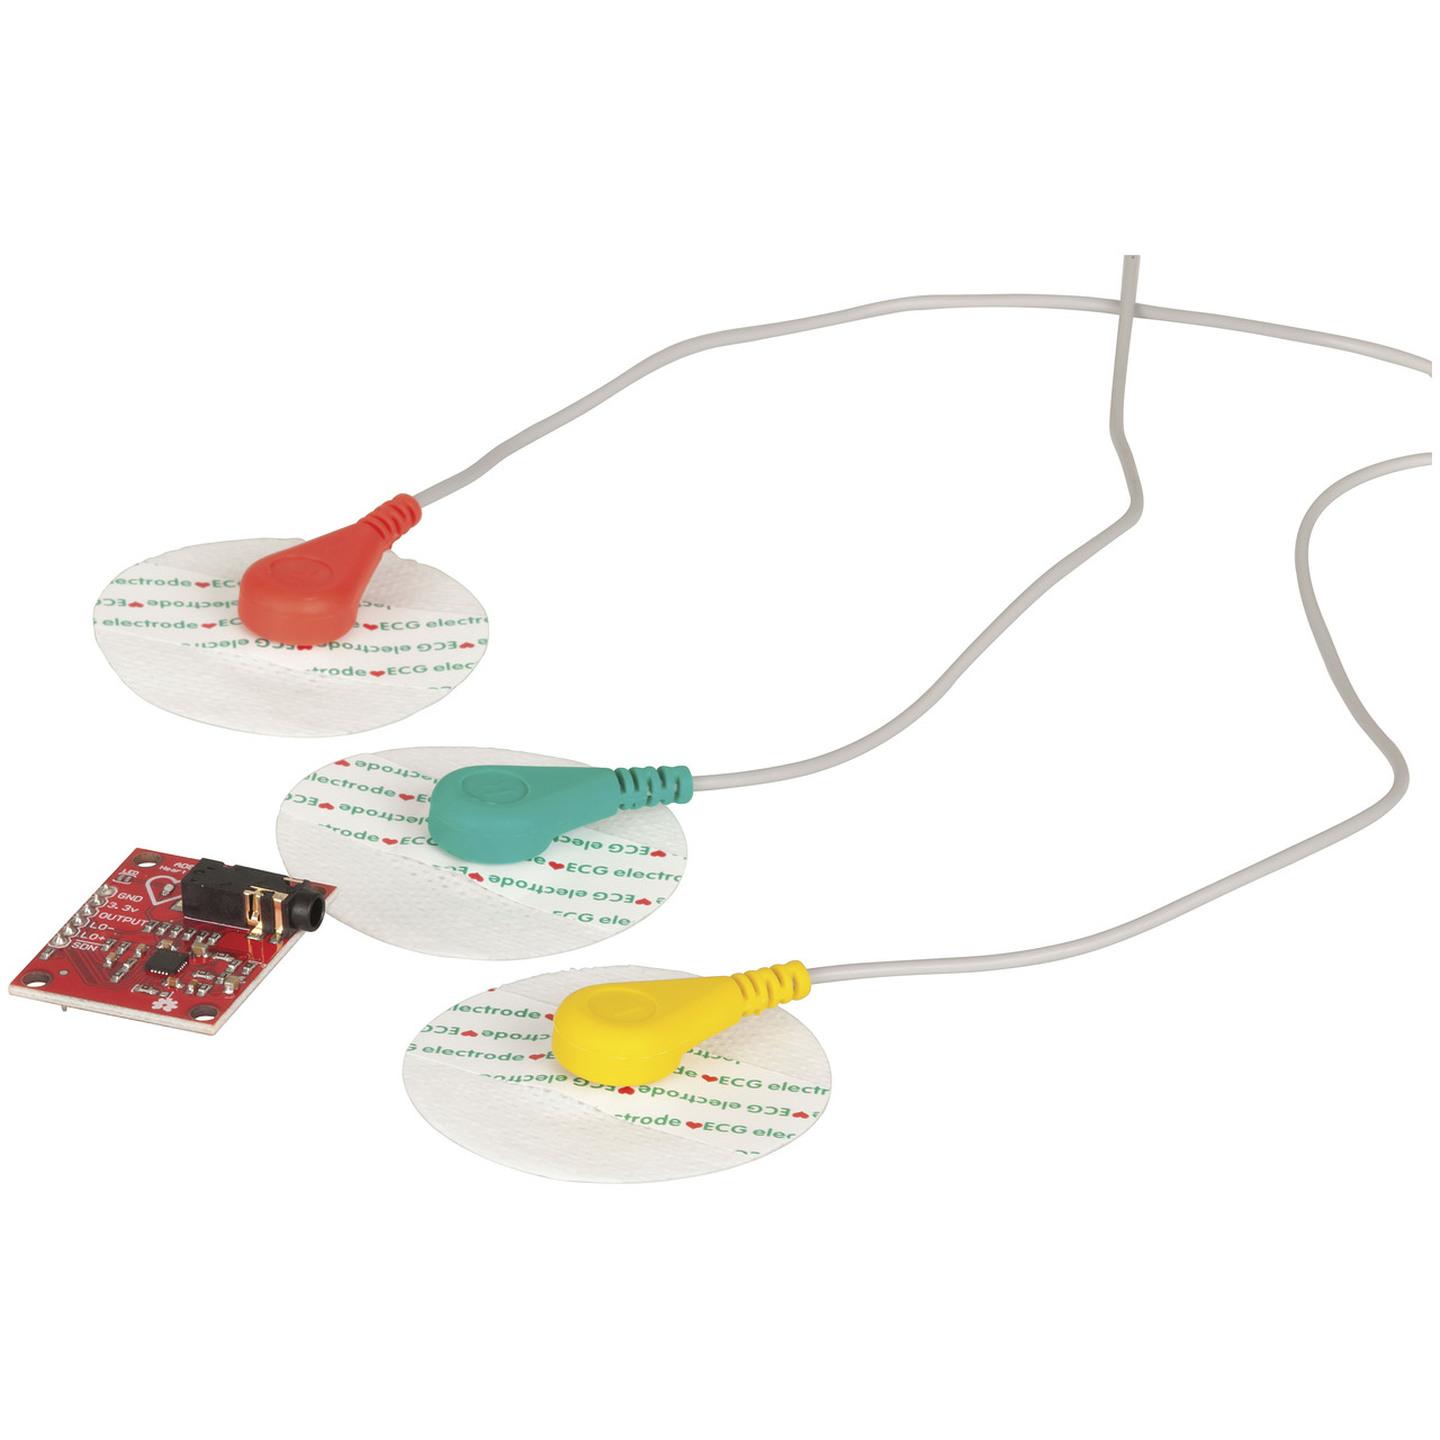 Duinotech Arduino Compatible ECG Heart Rate Sensor Kit